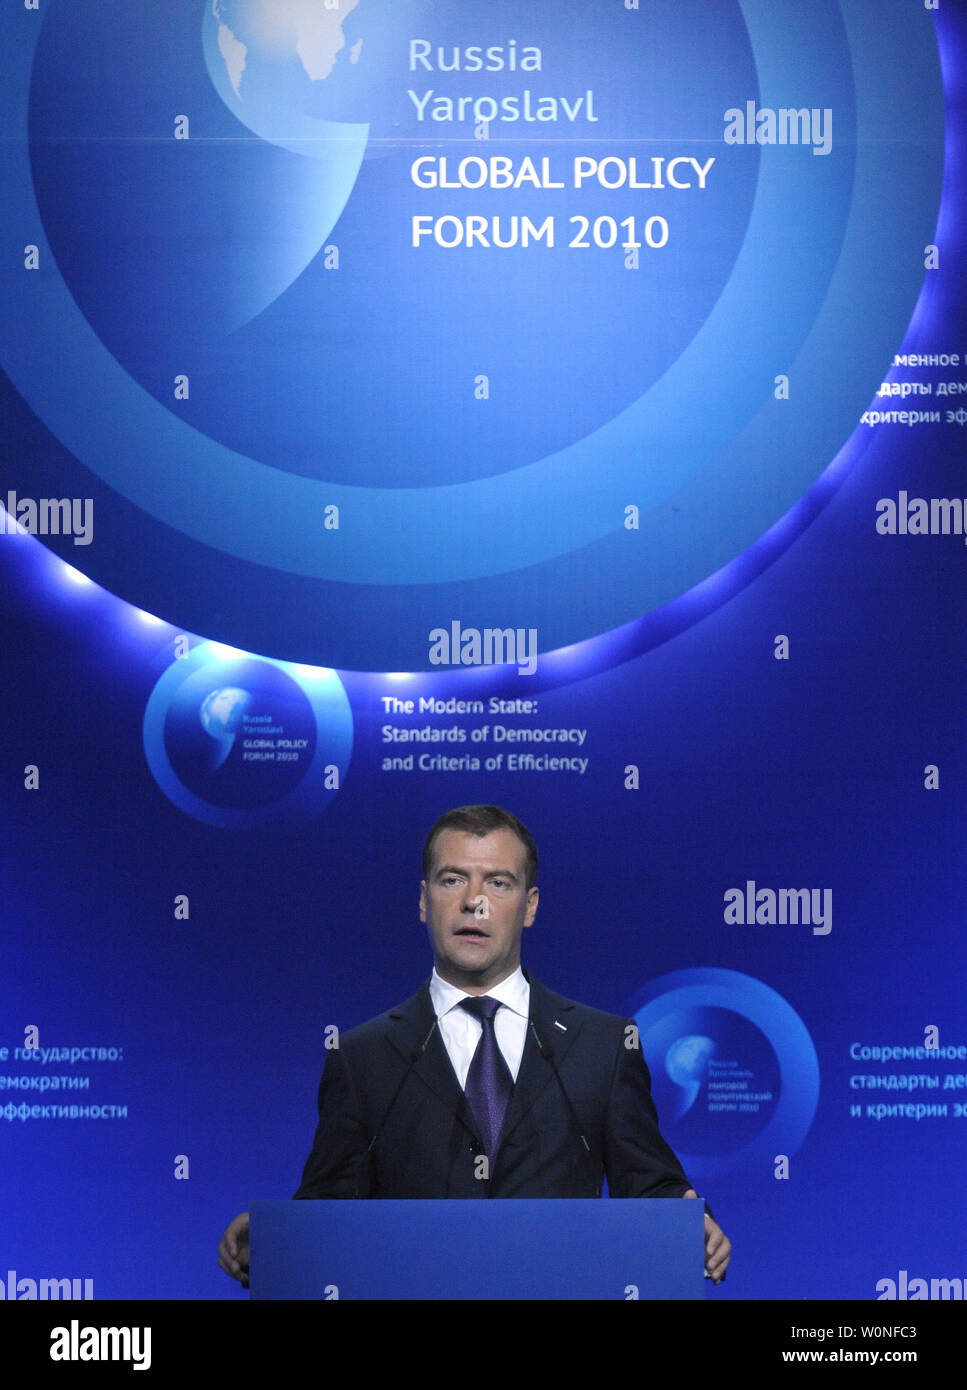 Der russische Präsident Dmitri Medwedew spricht an der Global Policy Forum in Jaroslawl am 10. September 2010. Medwedew sagte am Freitag "ich kategorisch nicht mit denen, die behaupten, dass es keine Demokratie in Russland, dass es durch die autoritäre Tradition ausgeschlossen ist damit einverstanden." UPI/Alex Volgin Stockfoto